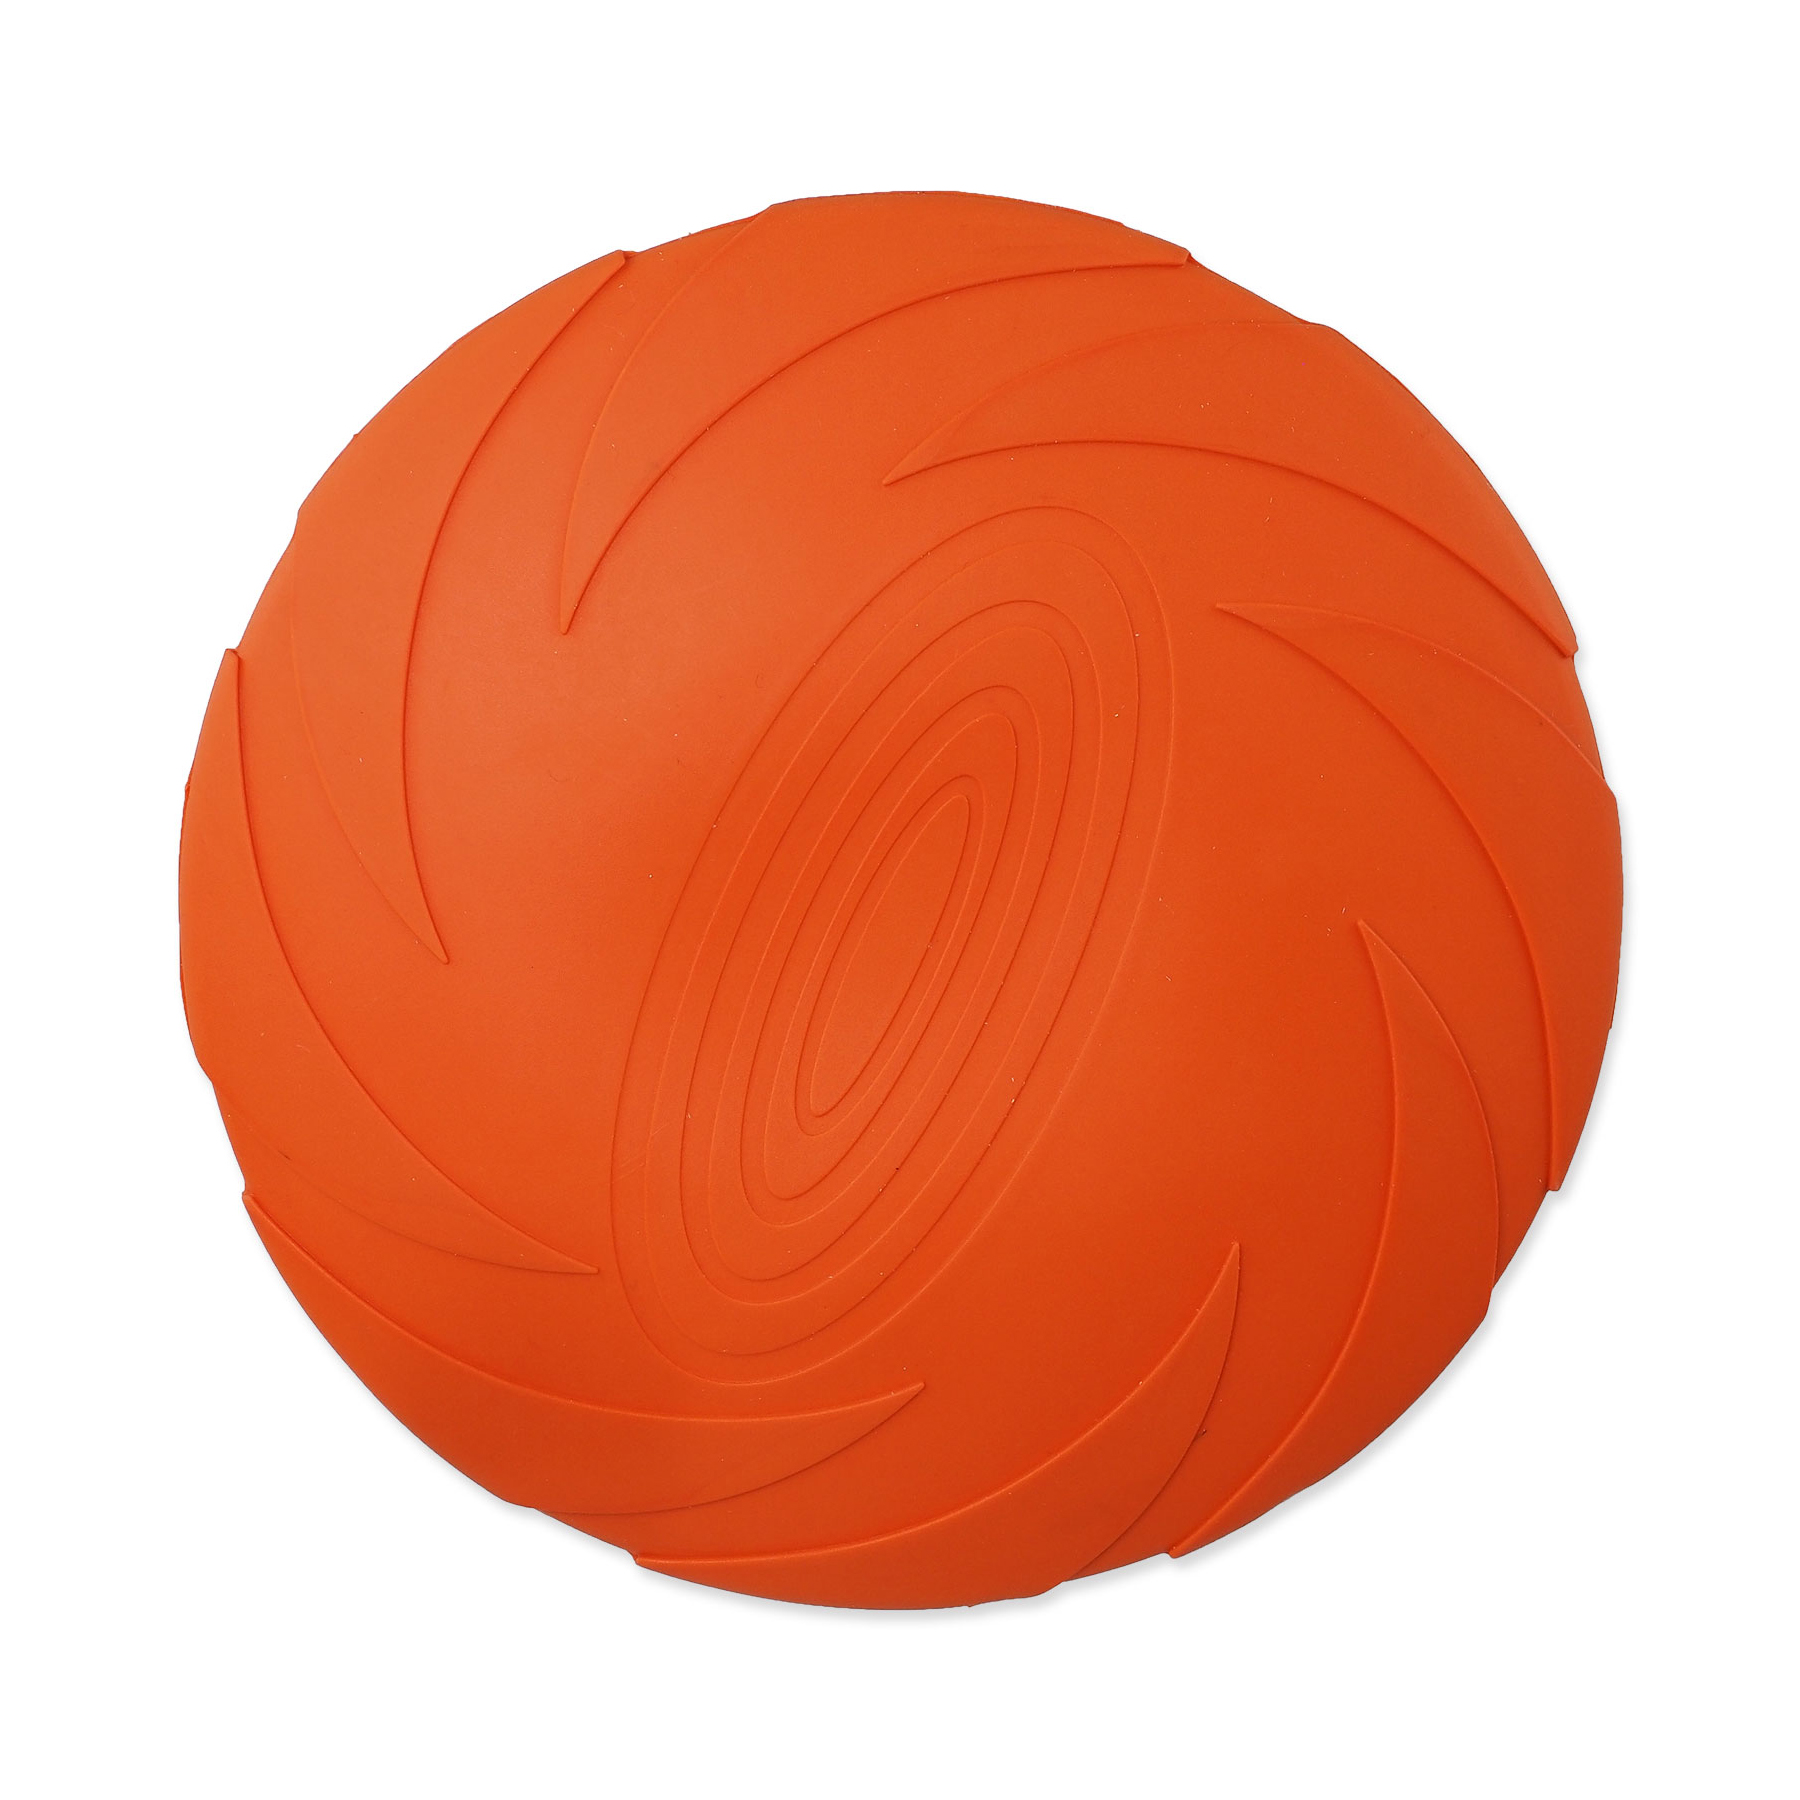 Dog Fantasy Hračka disk plovoucí oranžový 22 cm Dog Fantasy